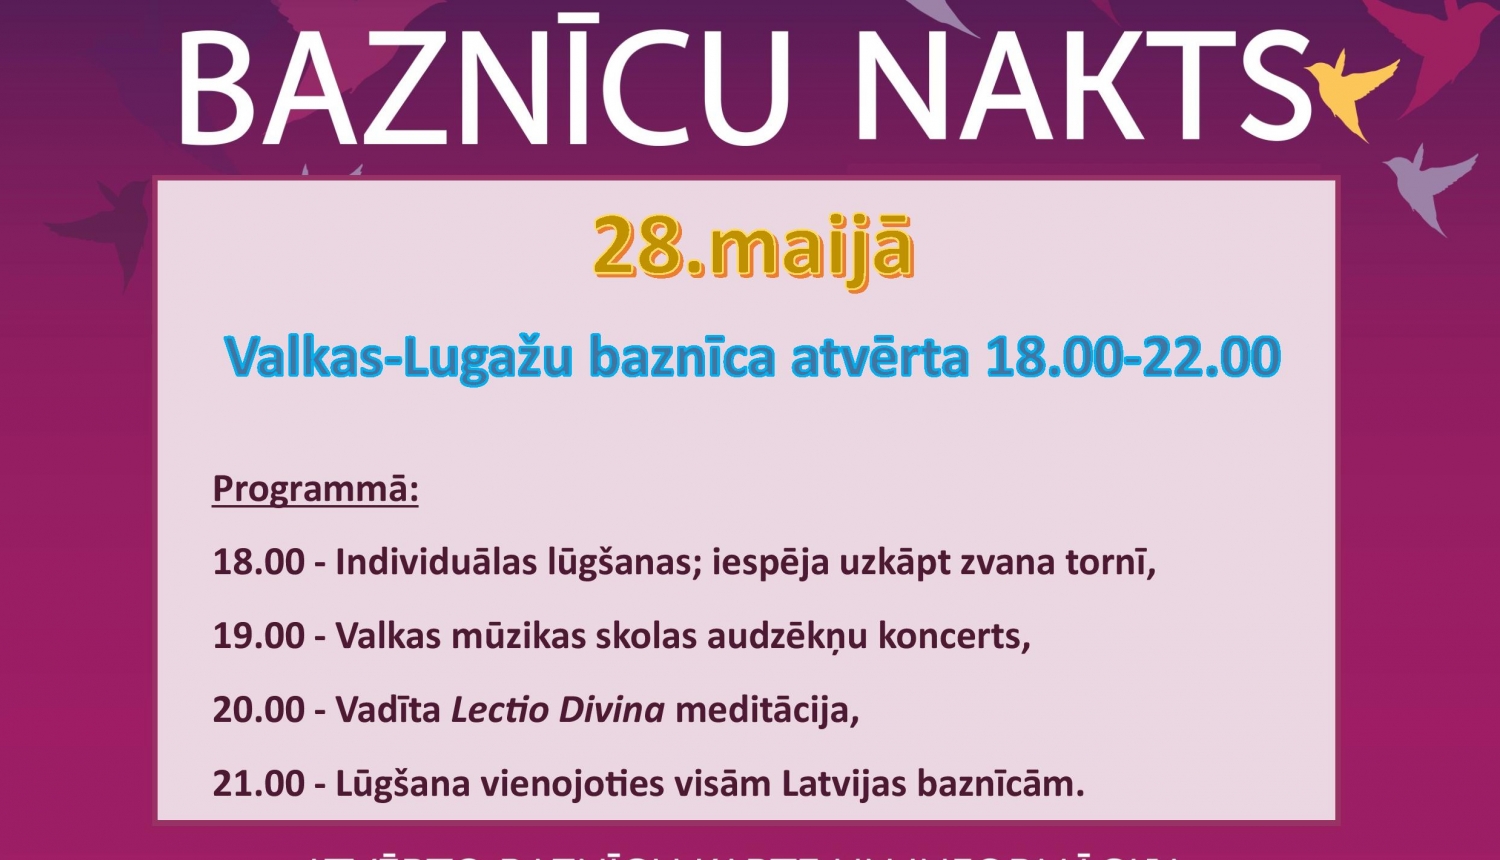 28. maijā Valkas-Lugažu baznīcā notiks Baznīcu nakts